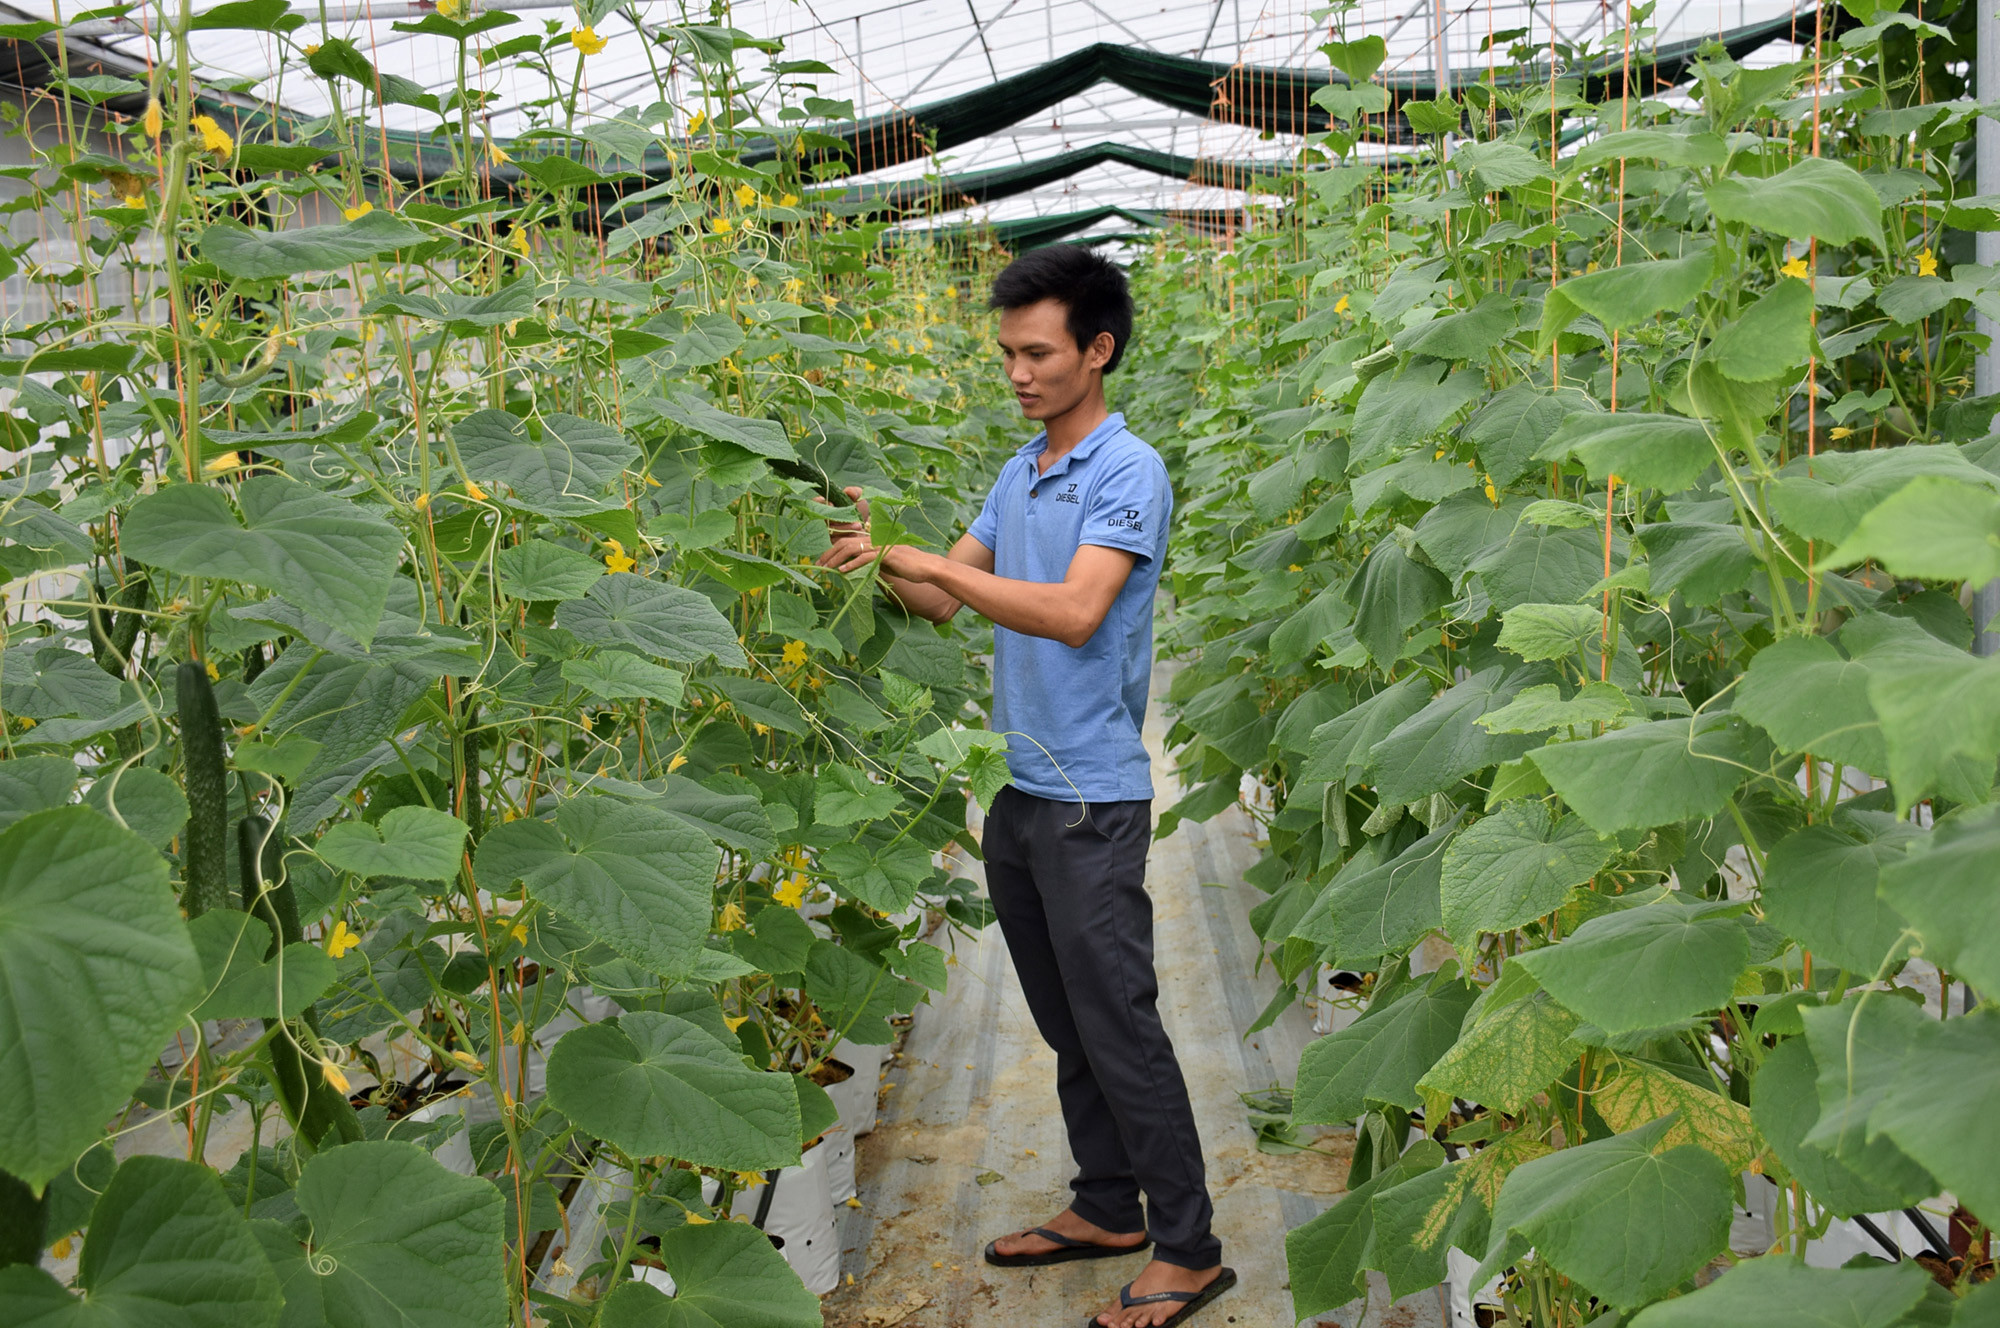 Mô hình sản xuất rau, củ, quả trong nhà lưới trên địa bàn xã Tân Thành (Yên Thành). Ảnh: Xuân Hoàng